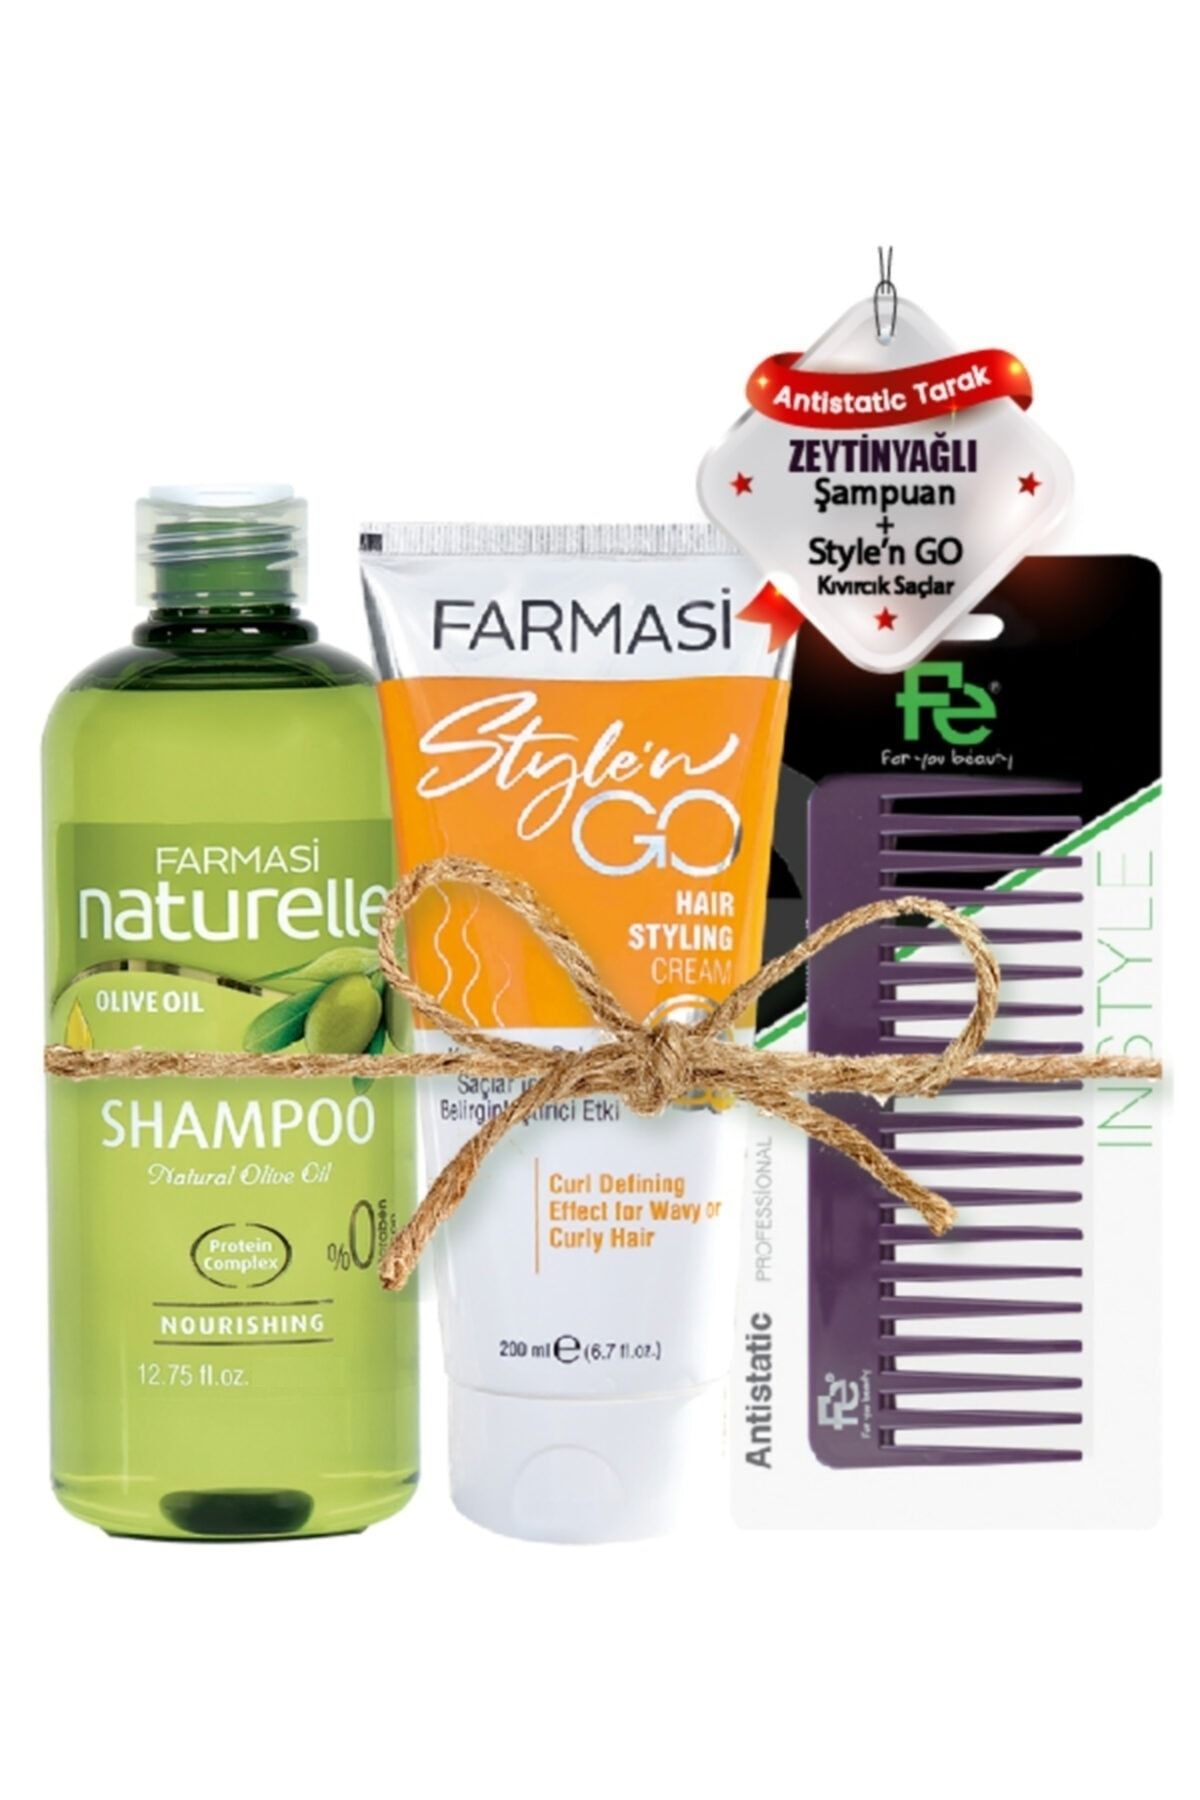 Farmasi Naturelle Zeytinyağlı Şampuan&Kıvırcık Saçlar Için Saç Kremi-200 Ml&Fe Tarak 123